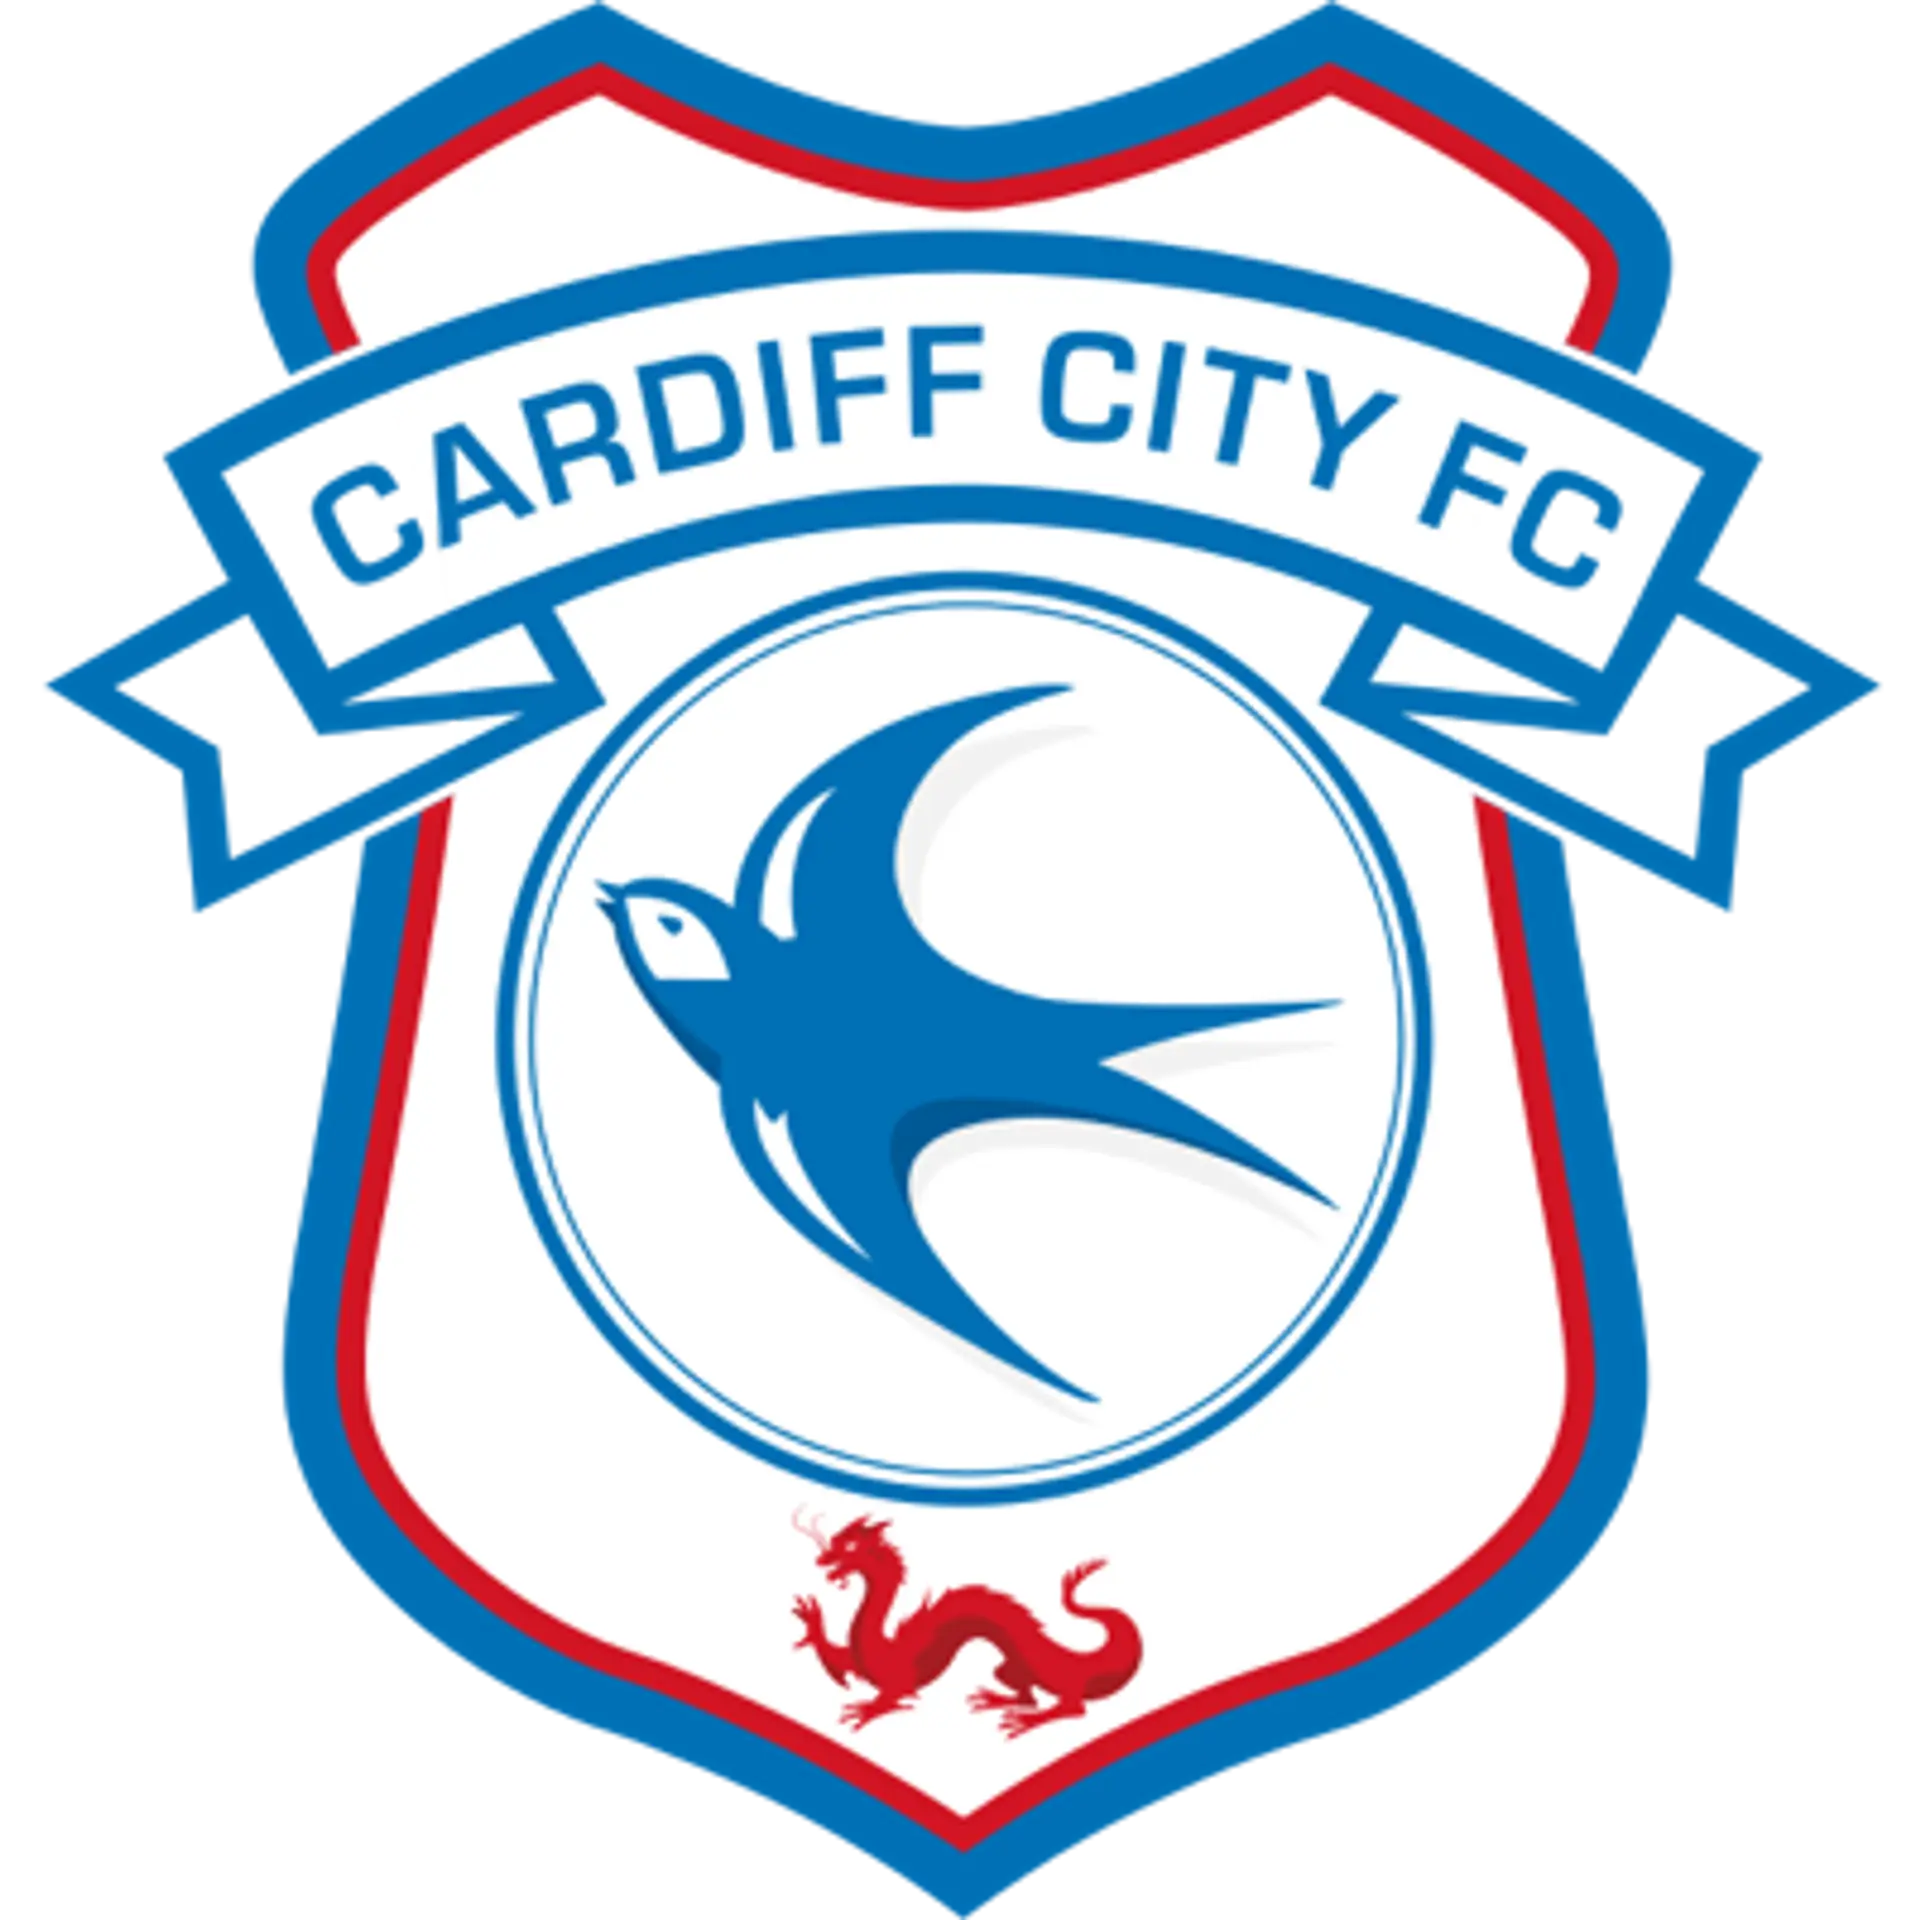 Cardiff City  Classifica